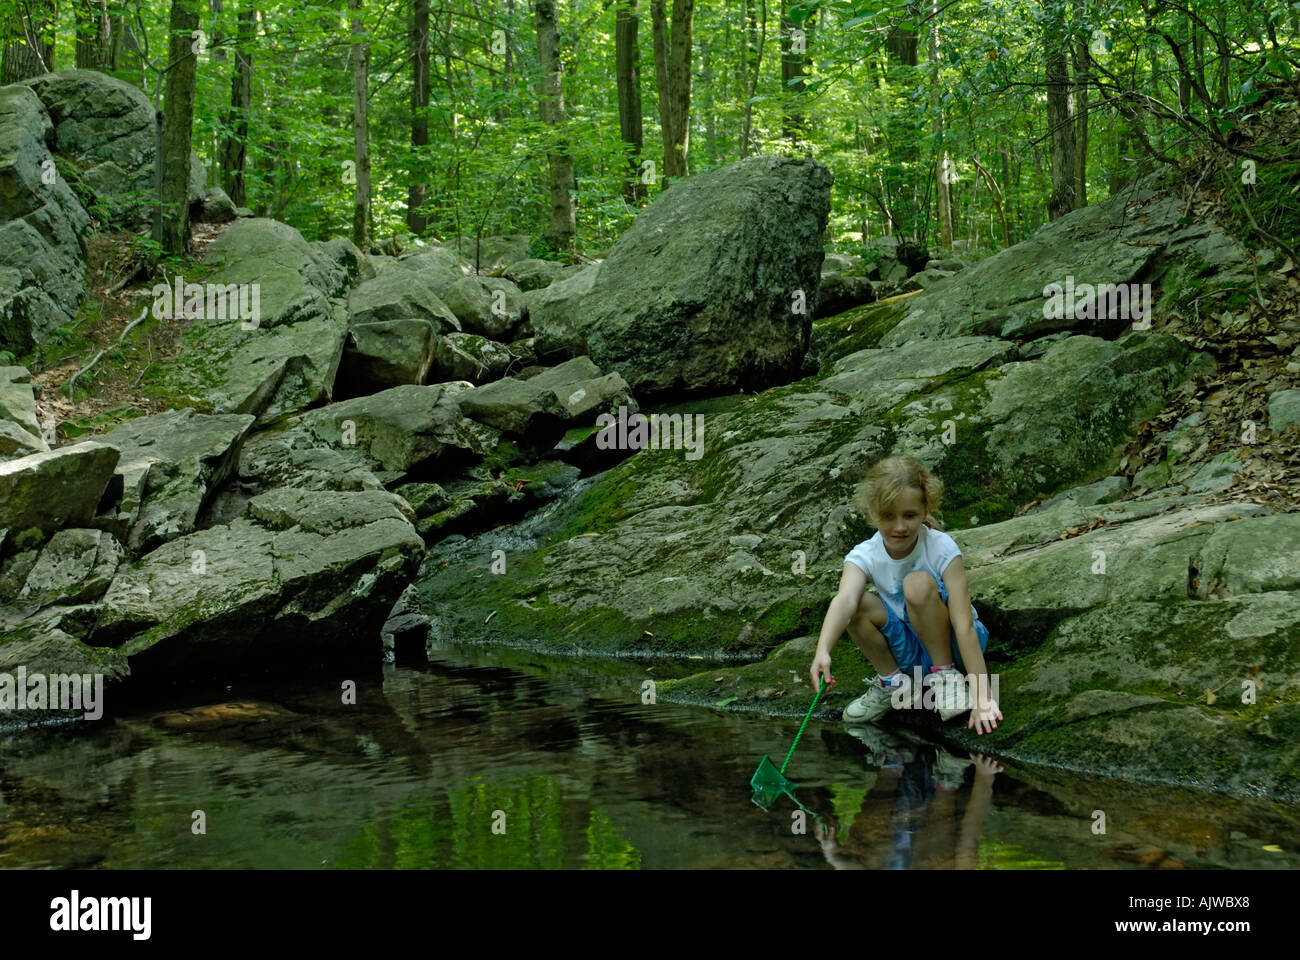 Jeune fille avec net à la recherche d'attraper des grenouilles ou des poissons dans un ruisseau dans les bois Banque D'Images